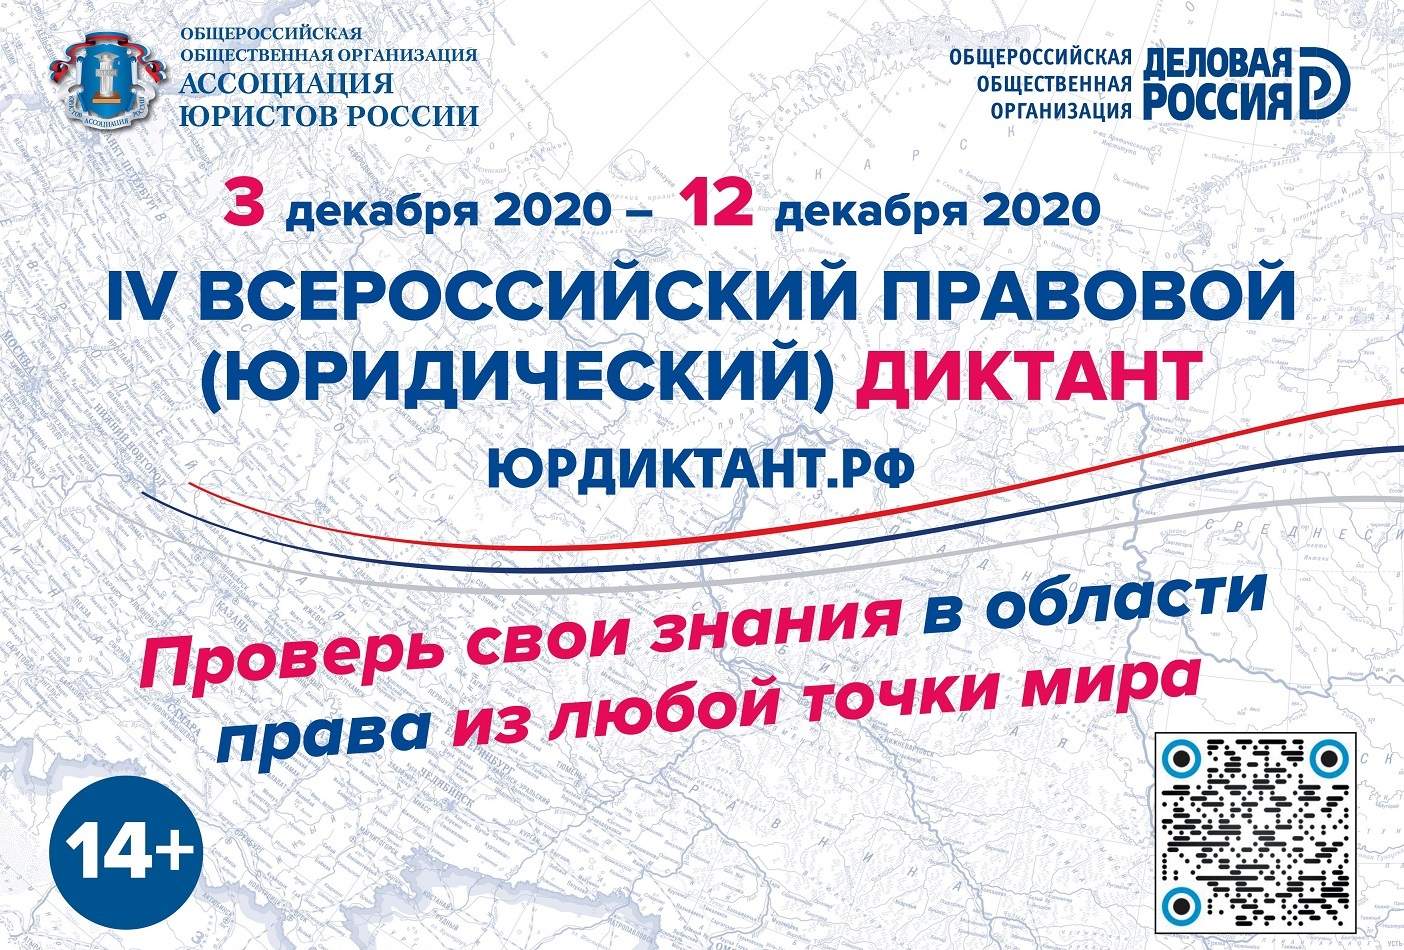 С 3 по 12 декабря 2020 года пройдет ЧЕТВЕРТЫЙ Всероссийский ПРАВОВОЙ диктант